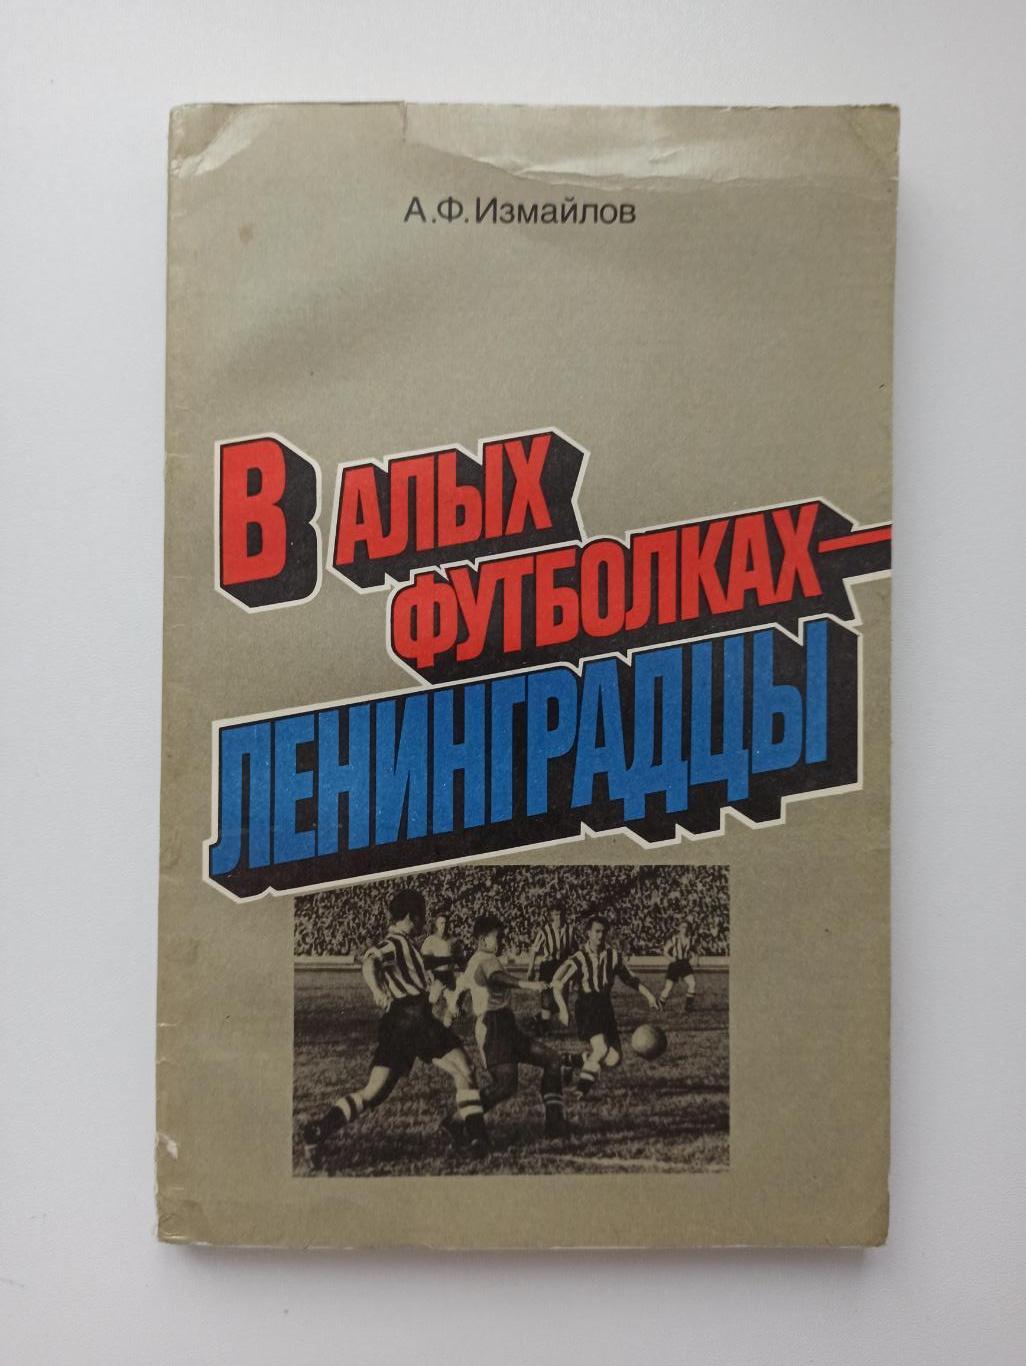 Футбол, А. Ф. Измайлов, В алых футболках-ленинградцы, 1986г., Лениздат